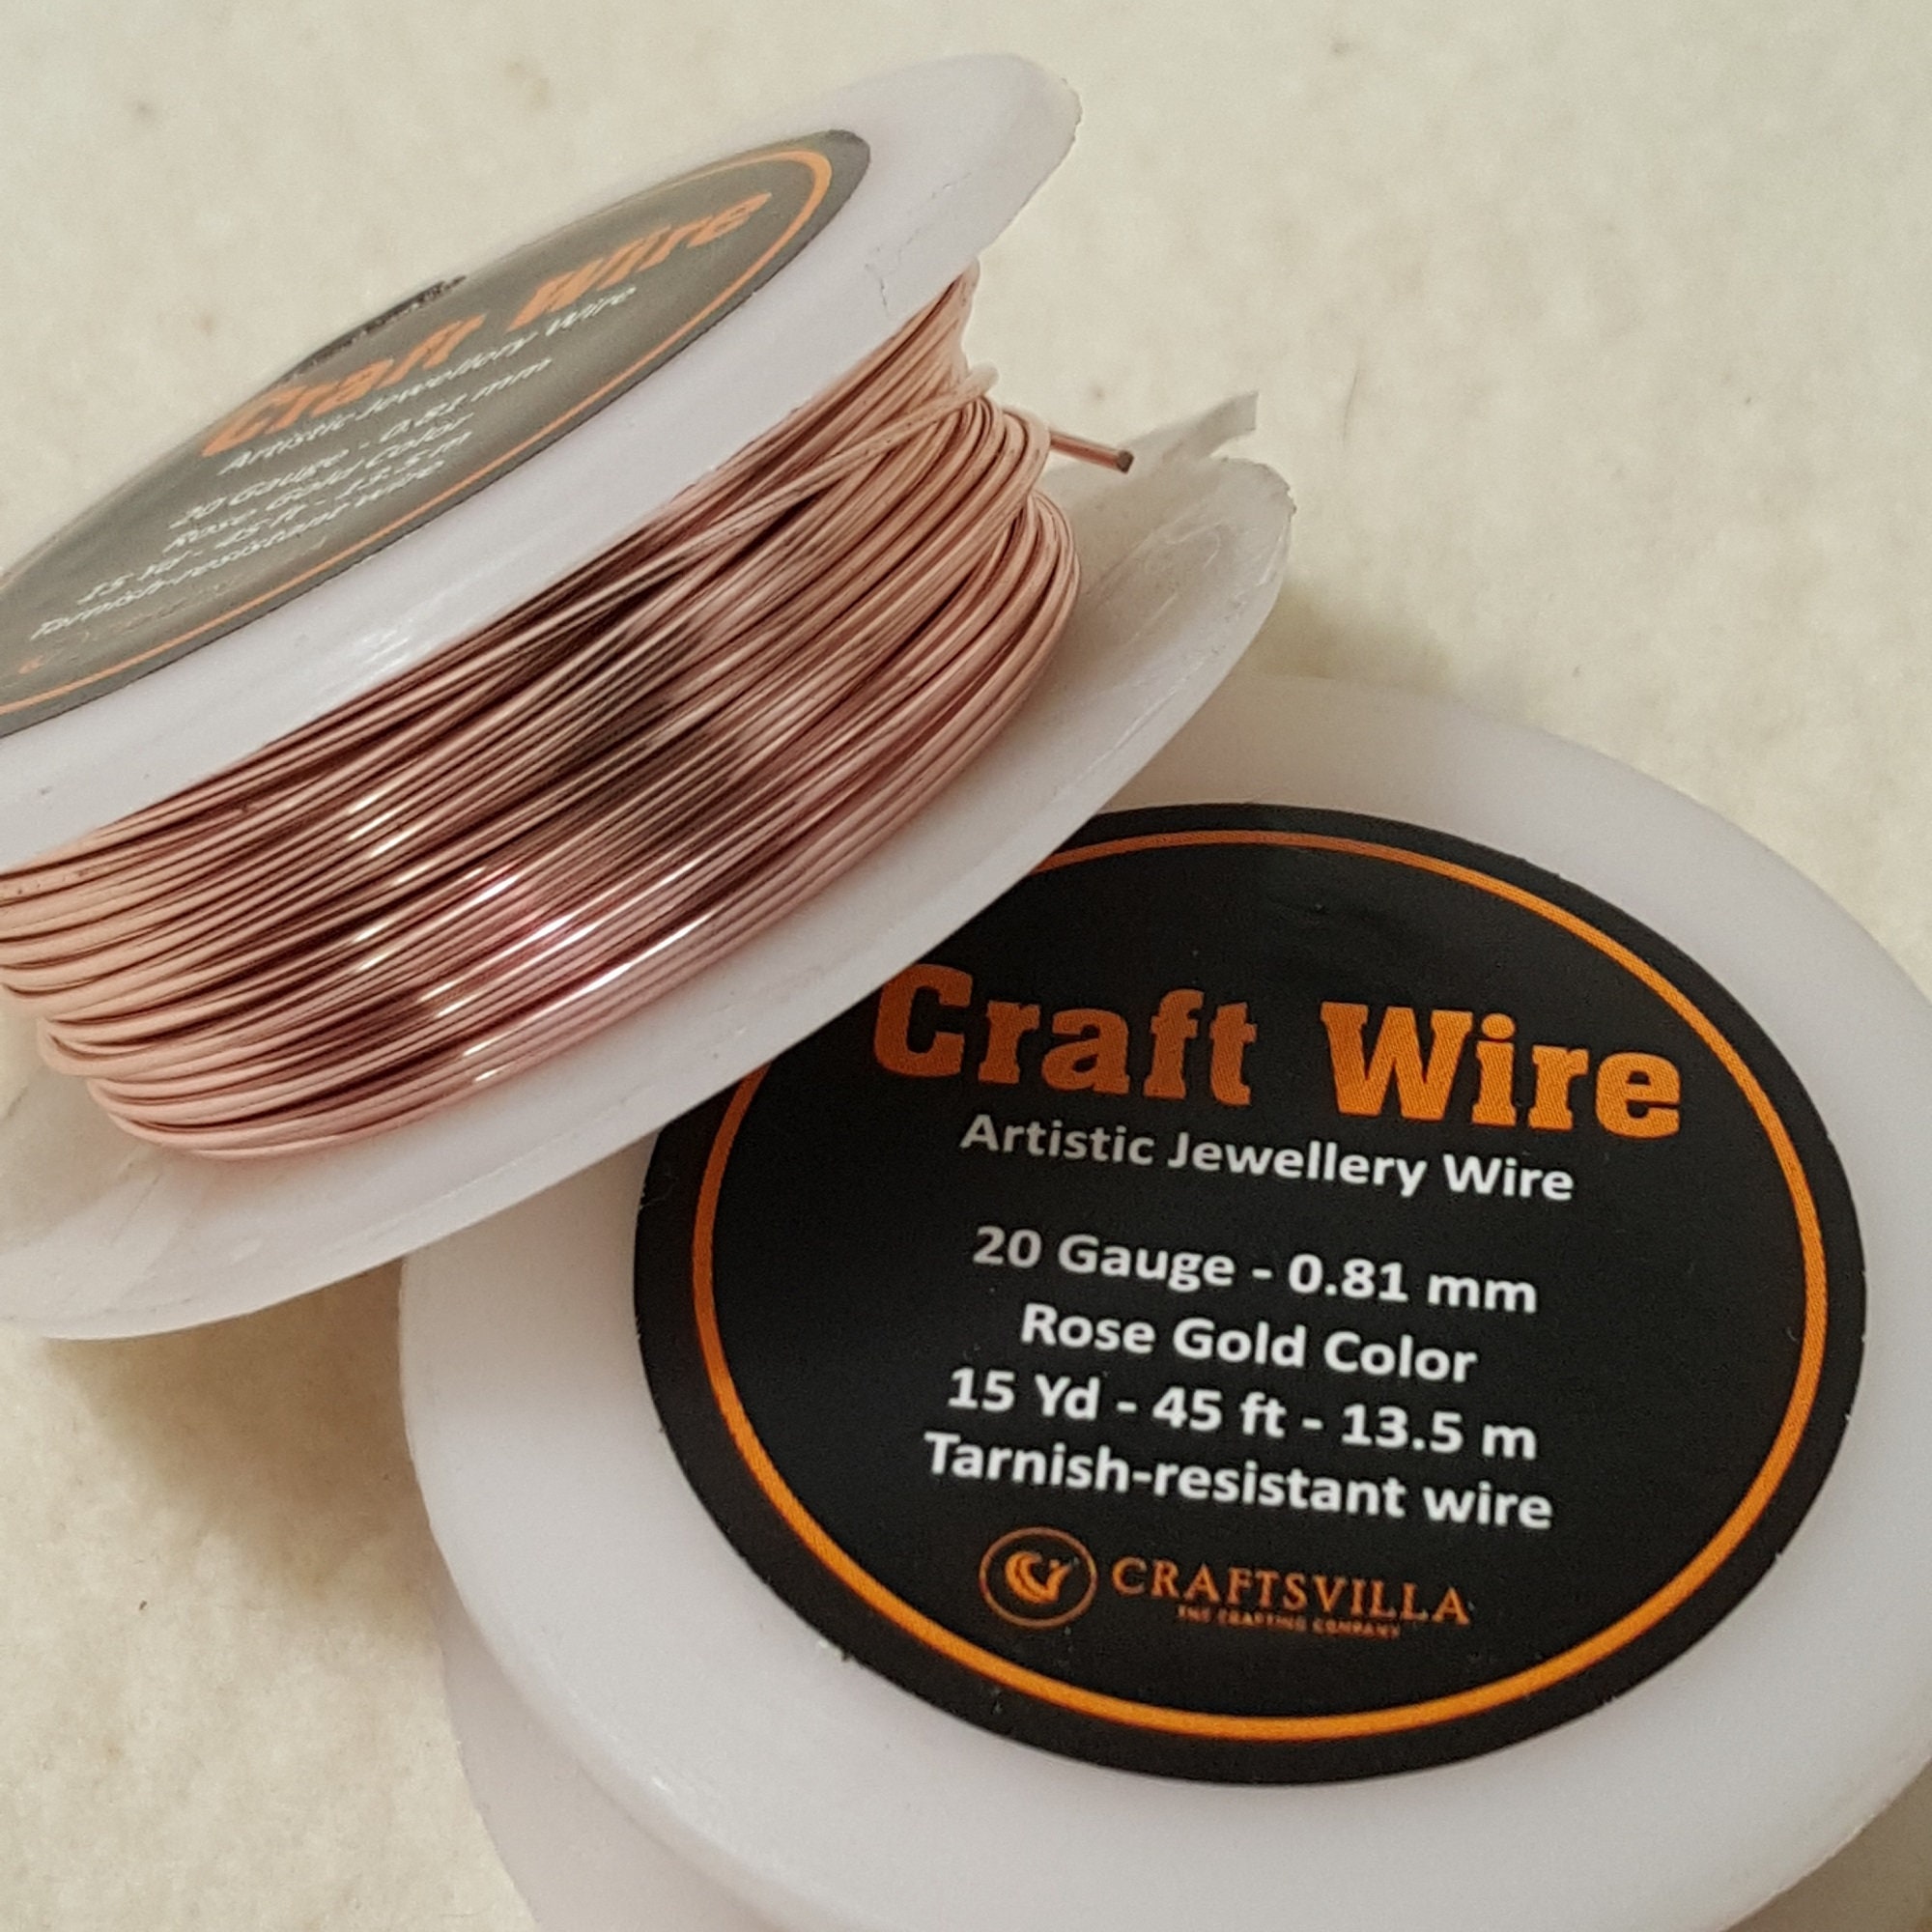 Darice | Craft Wire 20 Gauge Black 8yd